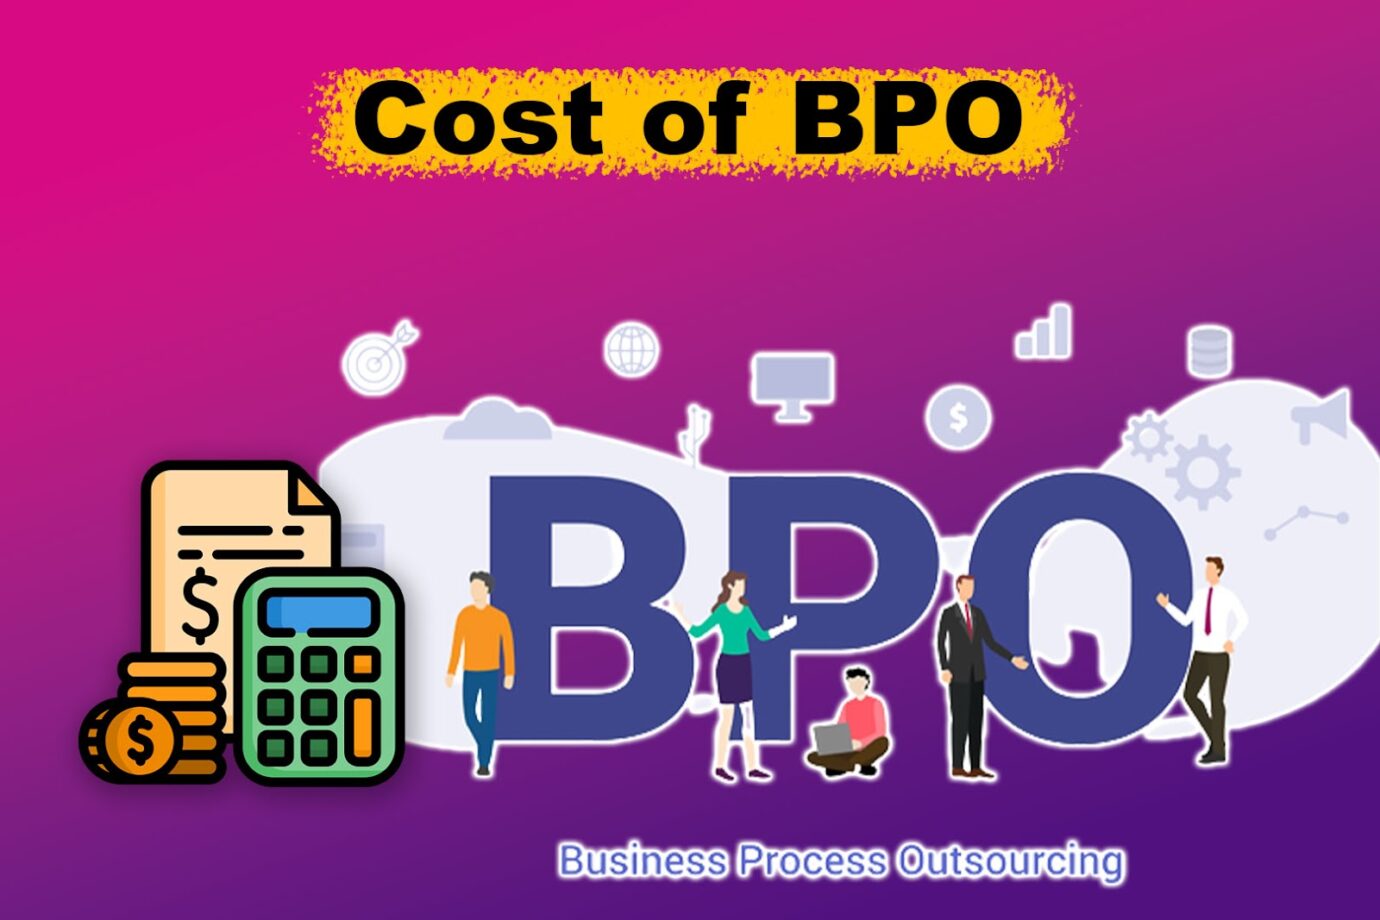 Cost of BPO